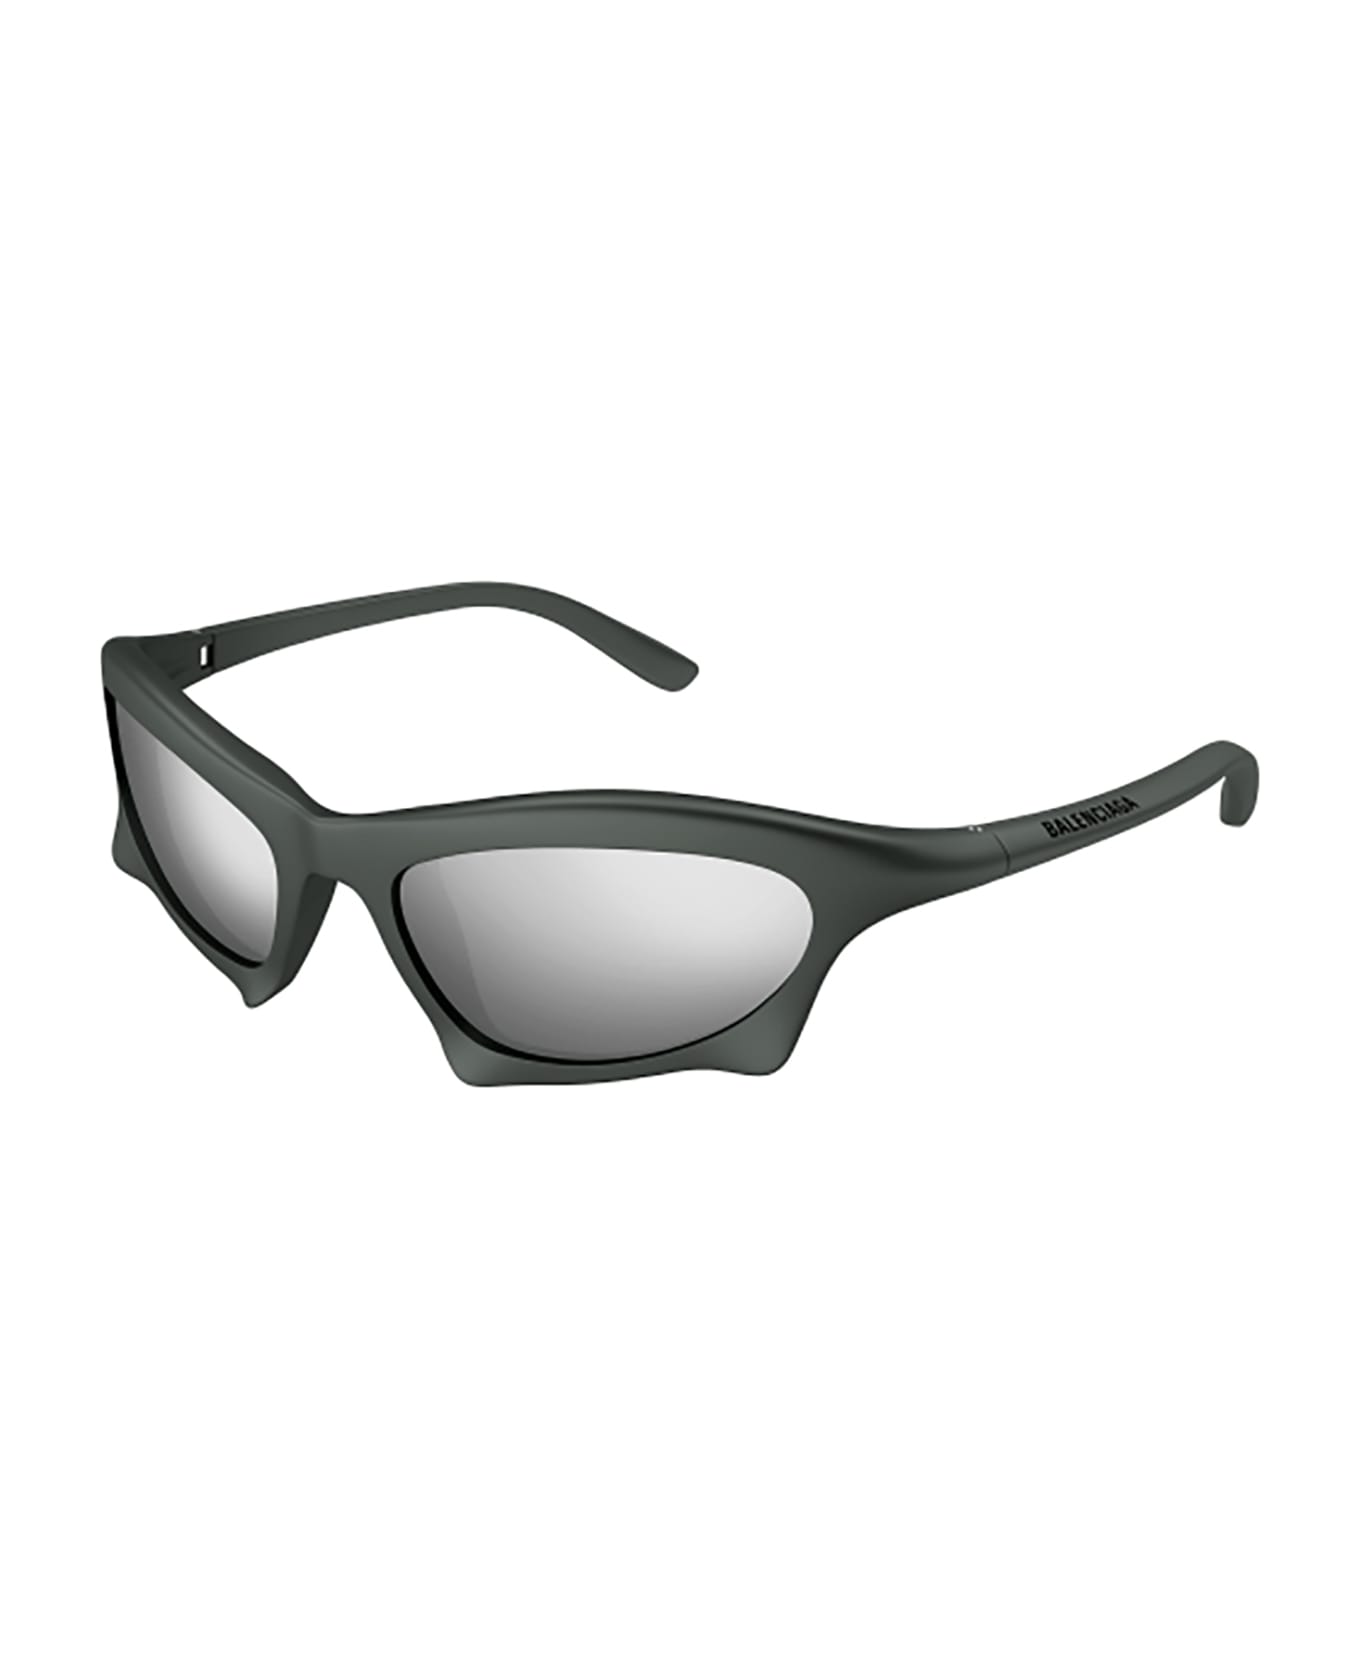 Balenciaga Eyewear BB0229S Sunglasses - Ruthenium Ruthenium S サングラス